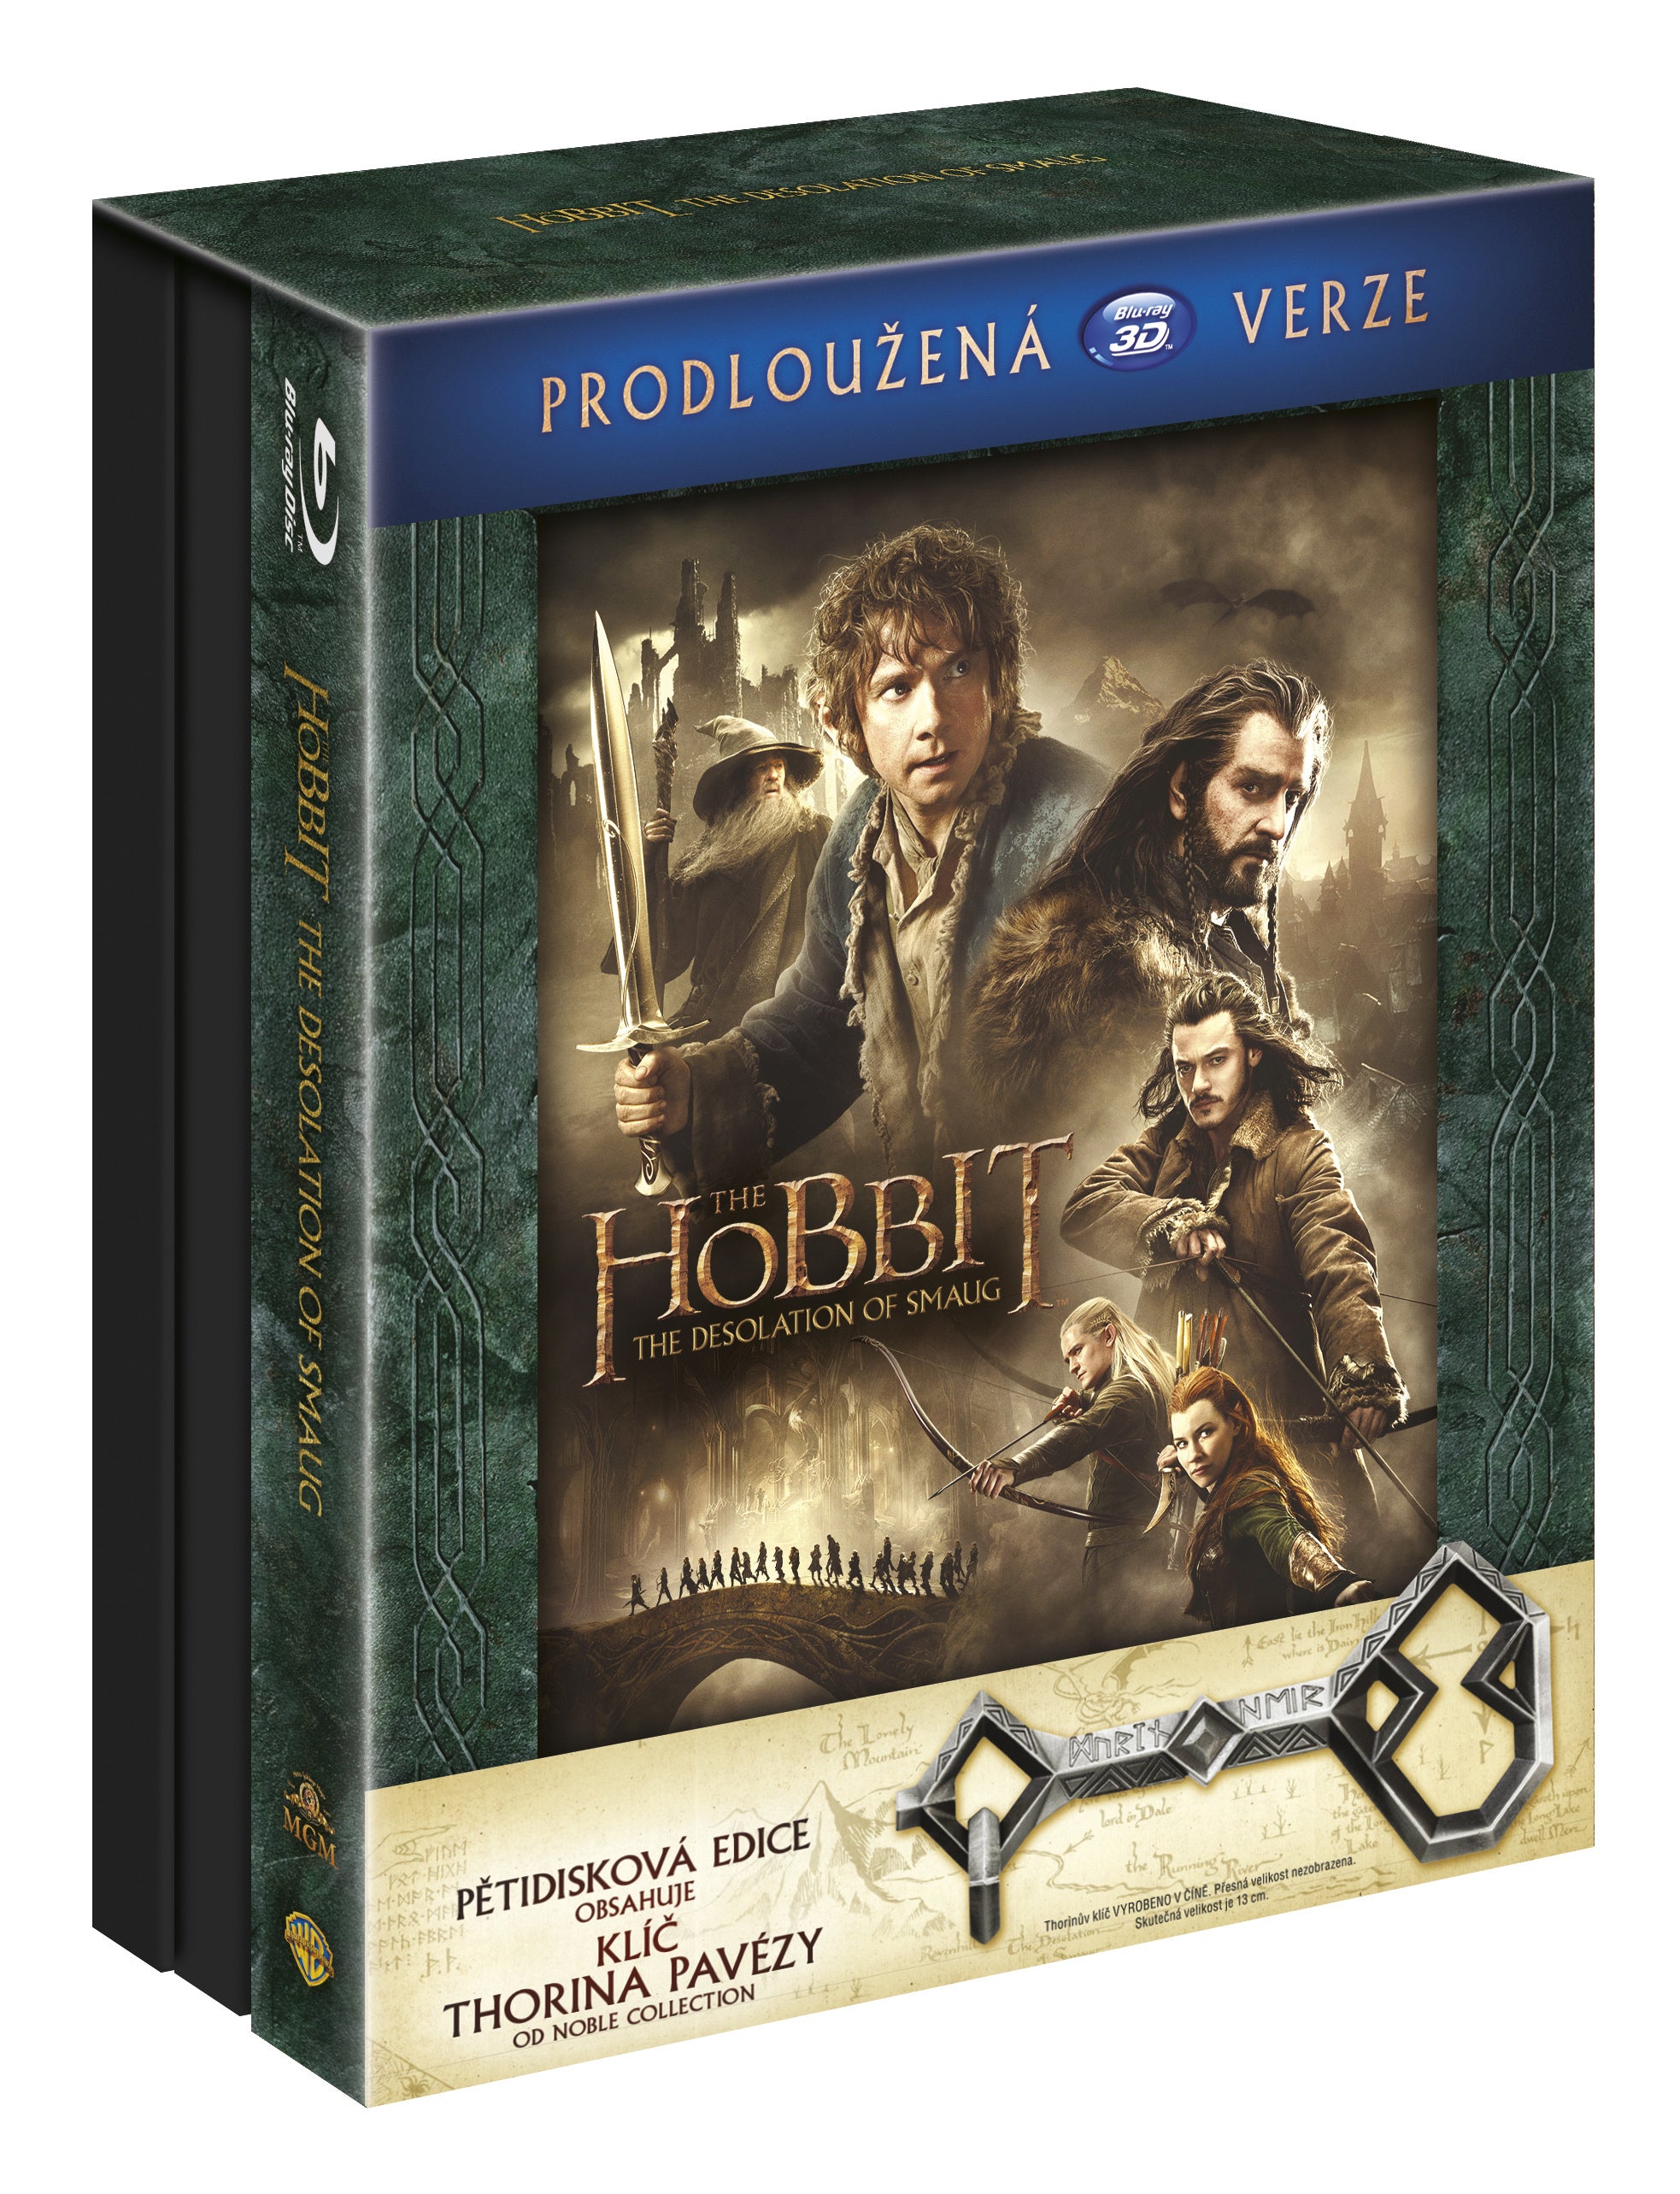 Hobit: Smakova draci poust - prodlouzena verze 5BD (3D+2D) Klic Ereboru / The Hobbit: The Desolation of Smaug - Extended Edition - Czech version